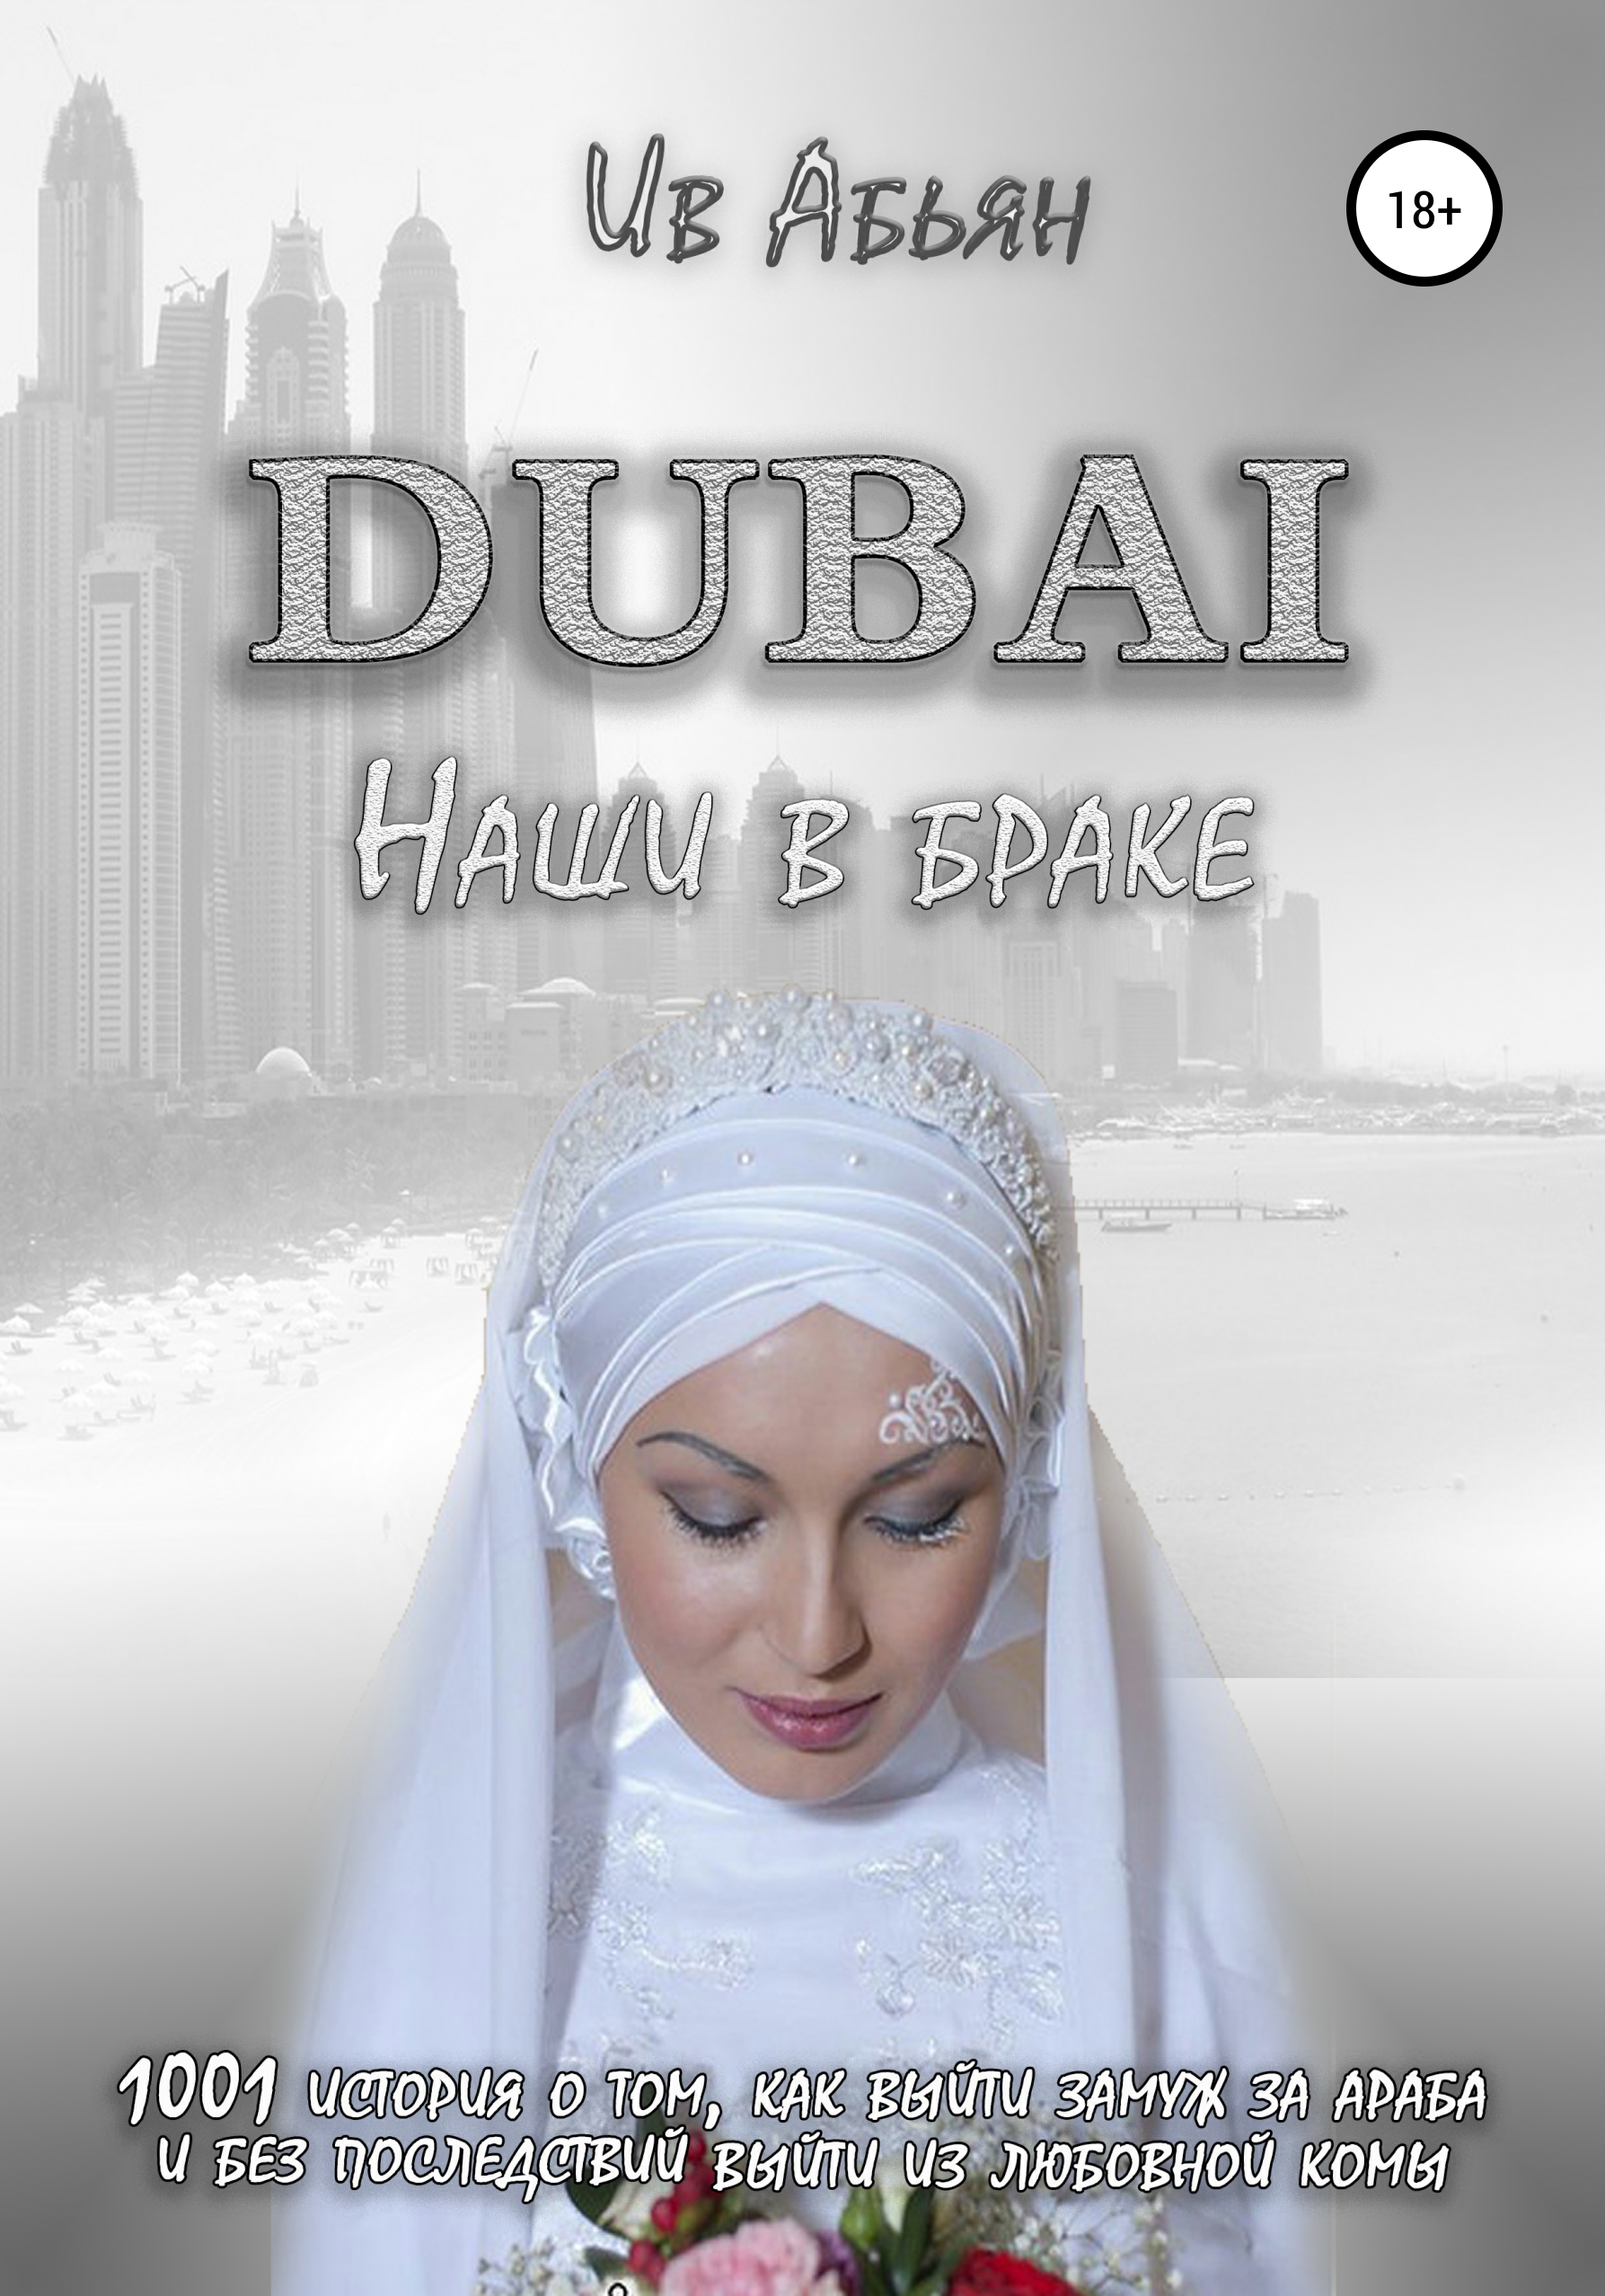 Дубаи выйти замуж. Ив Абьян "Дубай. Наши в браке". Замуж за араба книга. Как выйти замуж в Дубае. Обложка книги замуж за араба Таньковой.